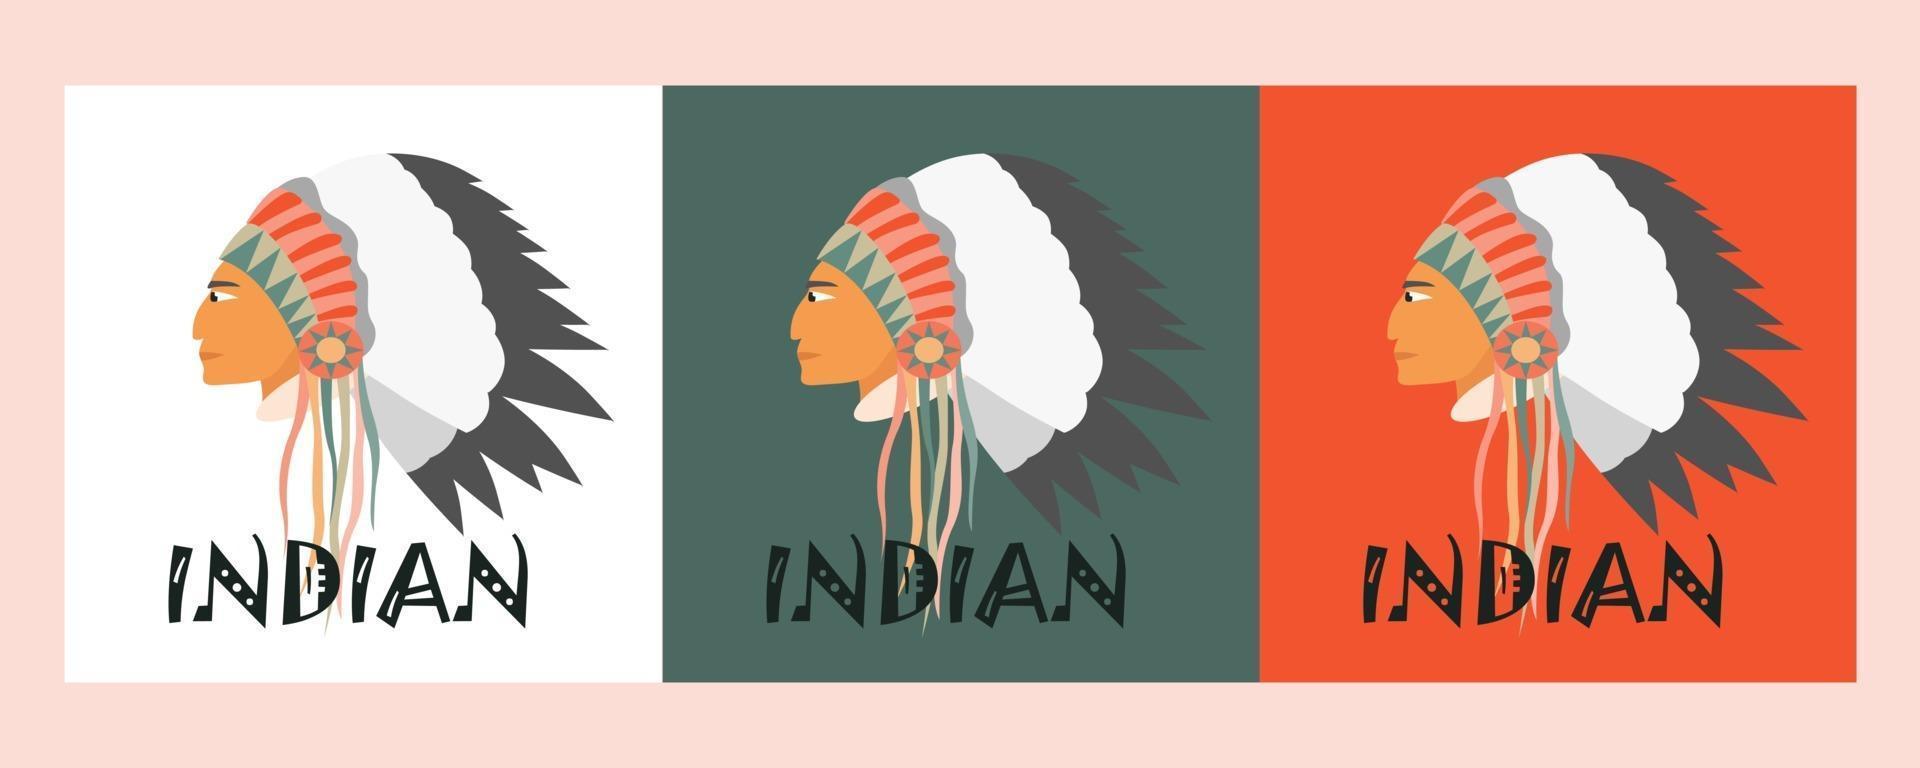 vector afbeelding van een indiaan in profiel met een hoofdtooi gemaakt van veren en linten. drie opties van achtergrond